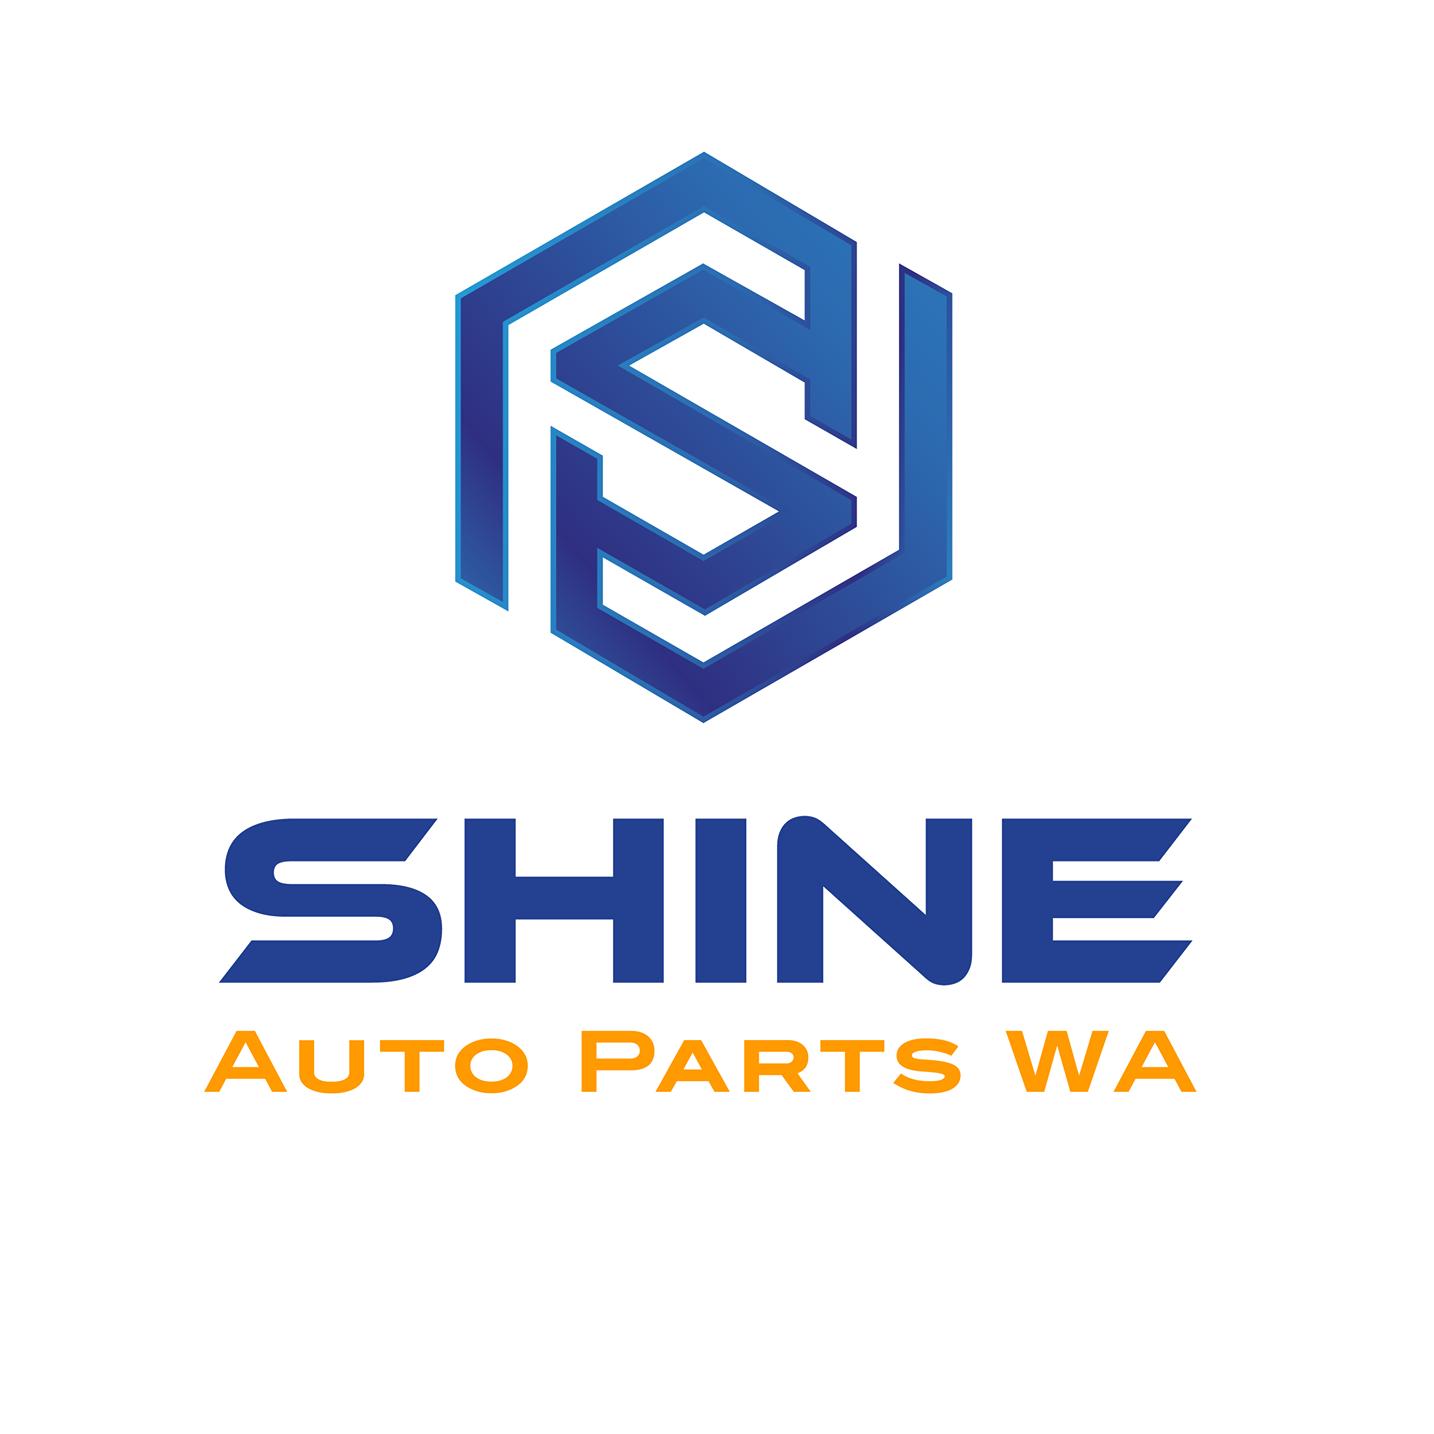 Shine Auto Parts WA | 40 Royal St, Kenwick WA 6107, Australia | Phone: 1300 550 883